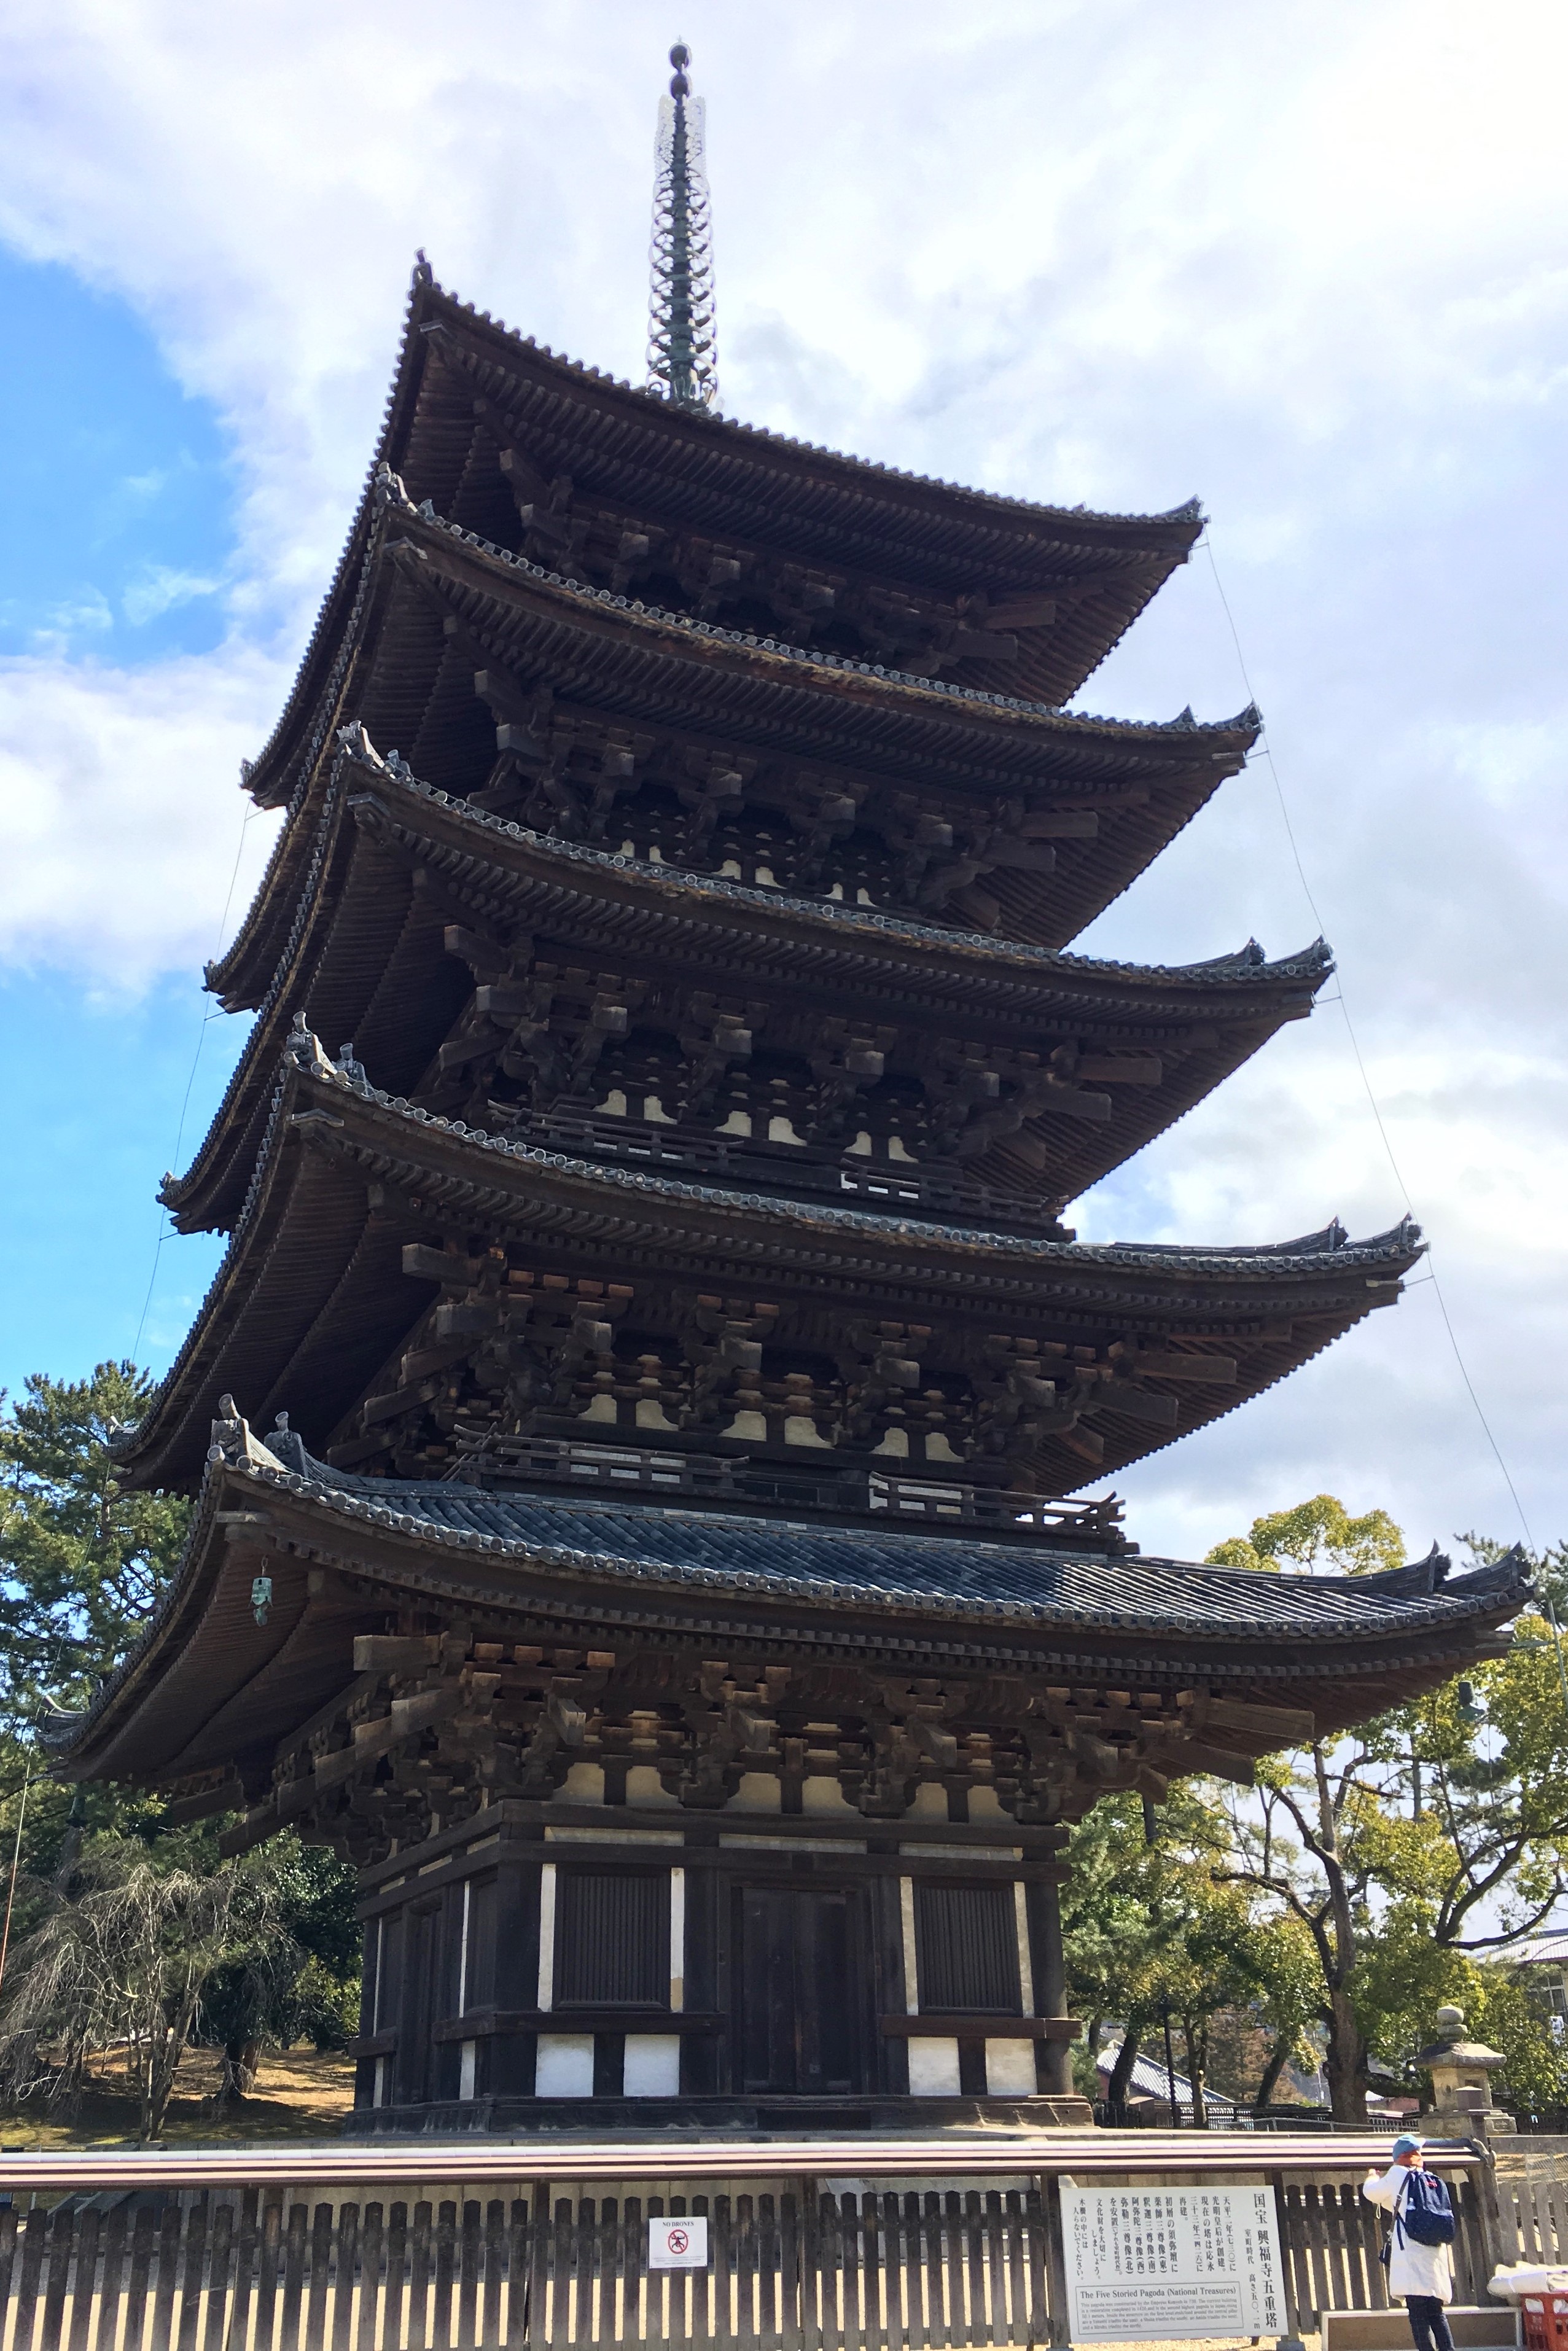 Gojyu no to at Kofuku-ji temple 